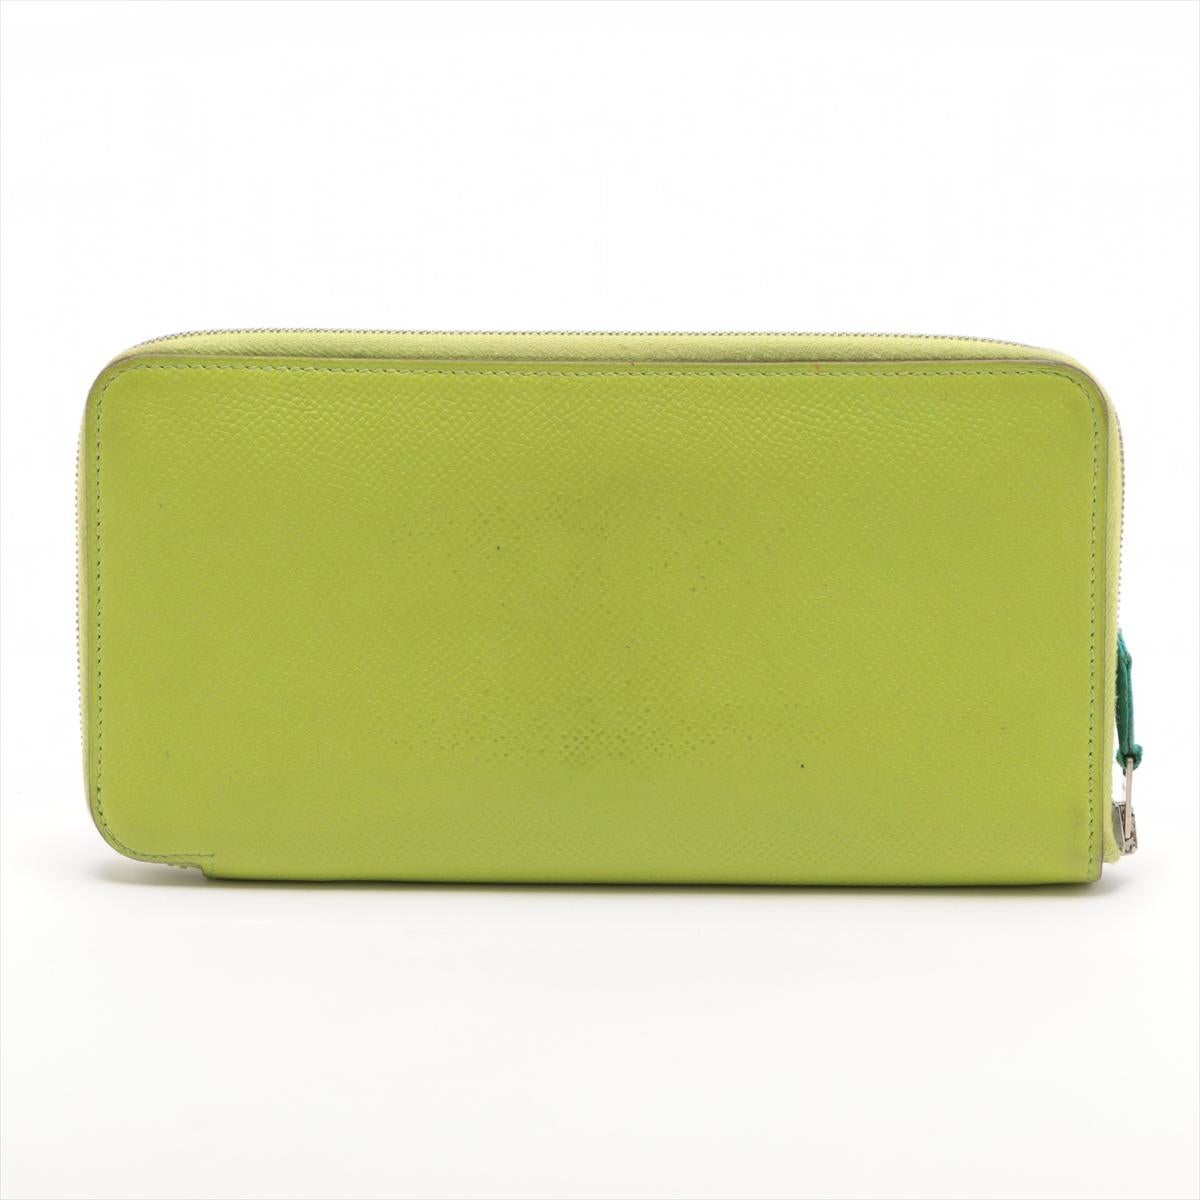 Die Hermès Azap Veau Epsom Long Zippy Wallet in Apfelgrün ist ein luxuriöses und praktisches Accessoire, das Raffinesse ausstrahlt. Das Portemonnaie ist aus hochwertigem Veau Epsom-Leder gefertigt, das für seine Strapazierfähigkeit und